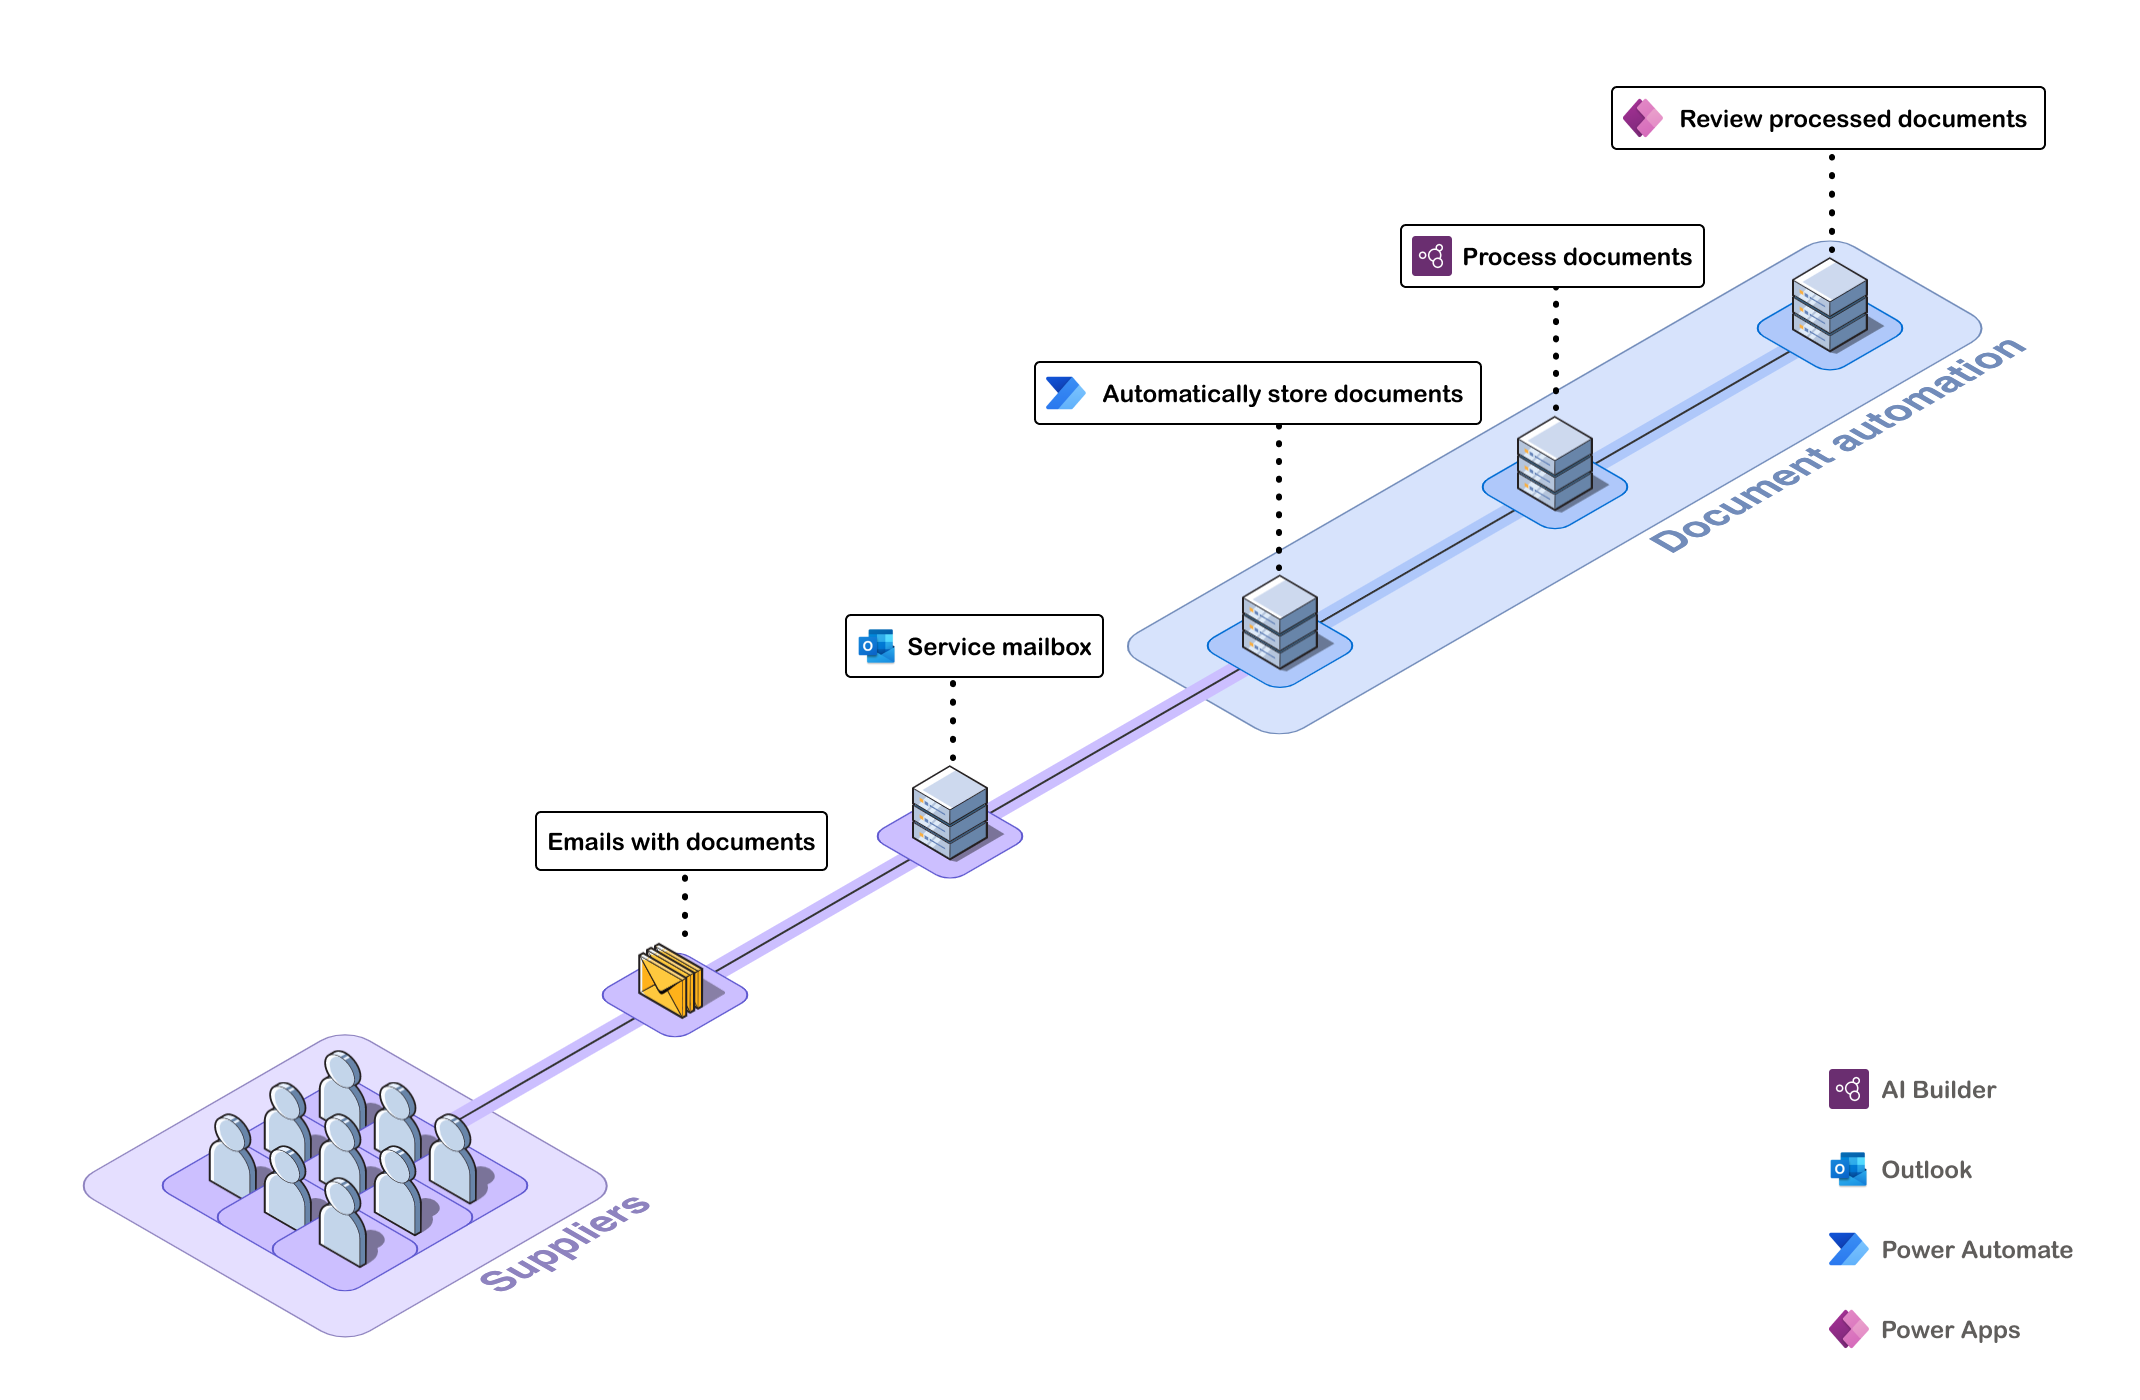 Diagrama mostrando as etapas da automação de documentos.